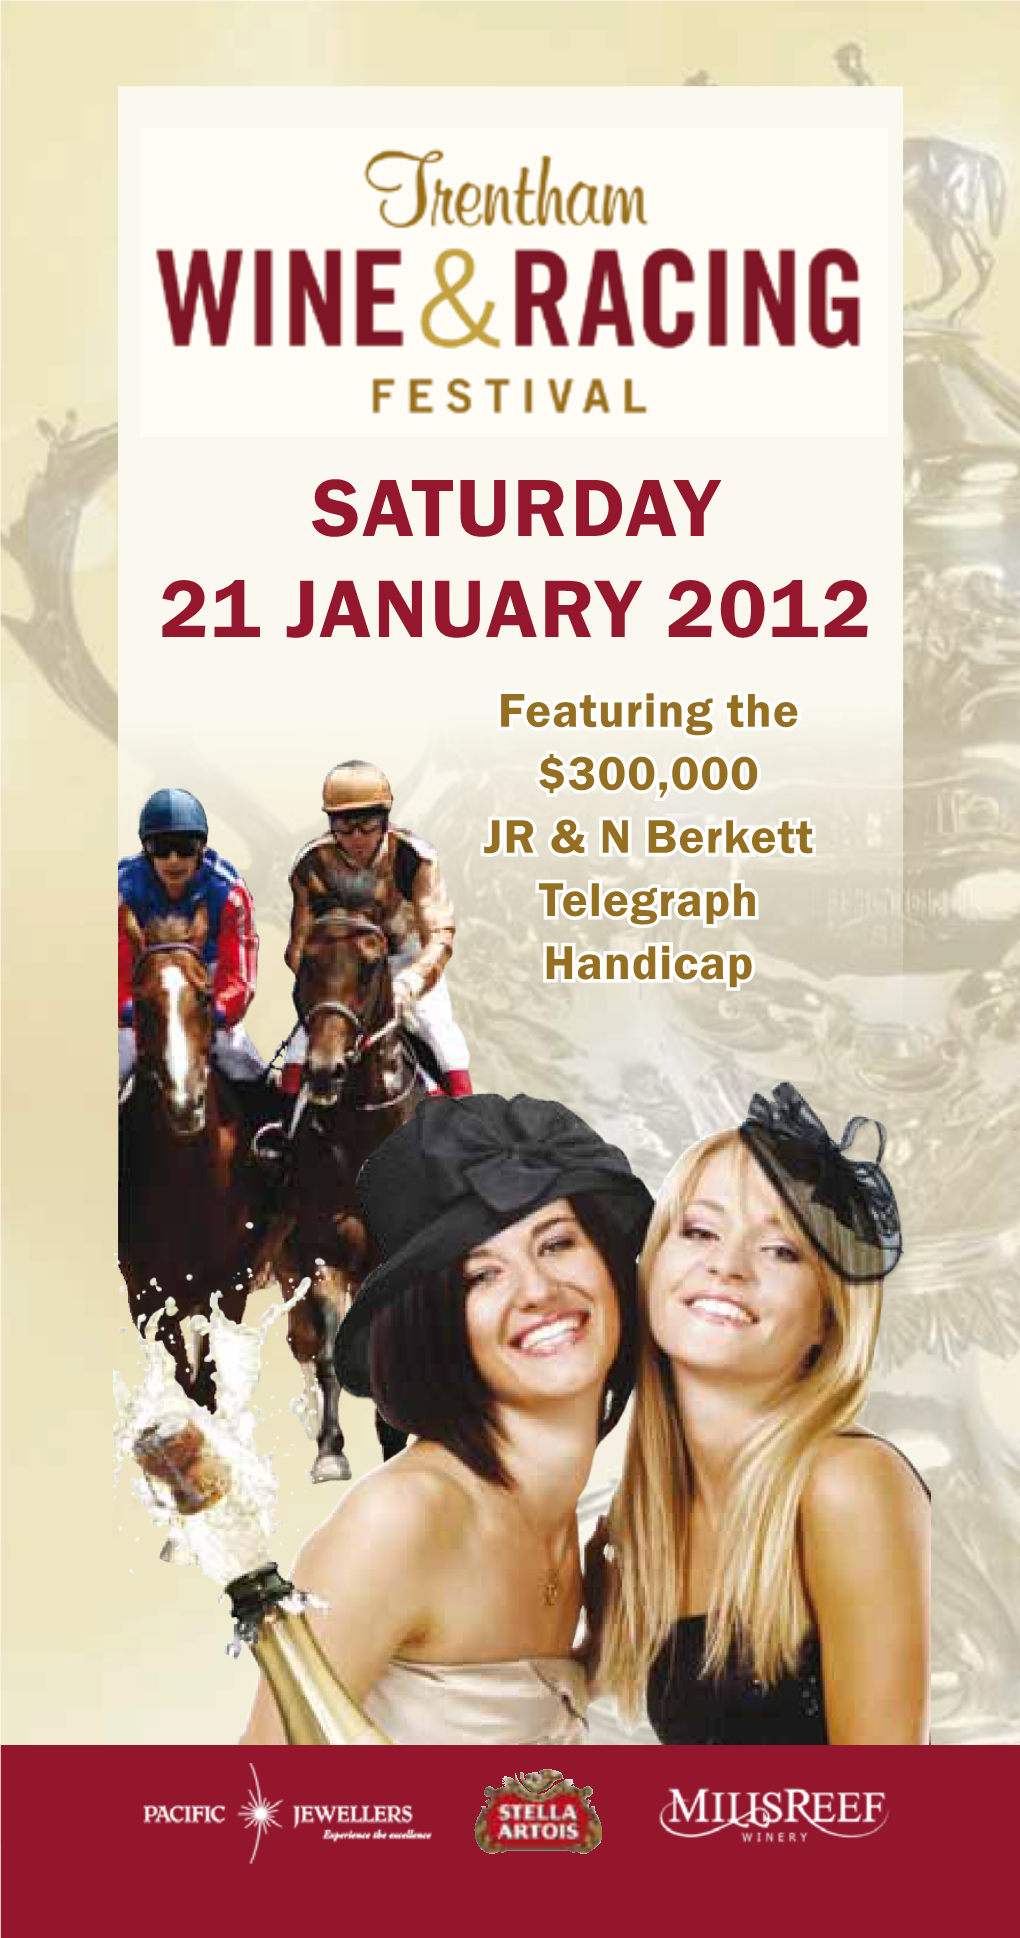 Saturday 21 January 2012 Featuring the $300,000 Jr & N Berkett Telegraph Handicap